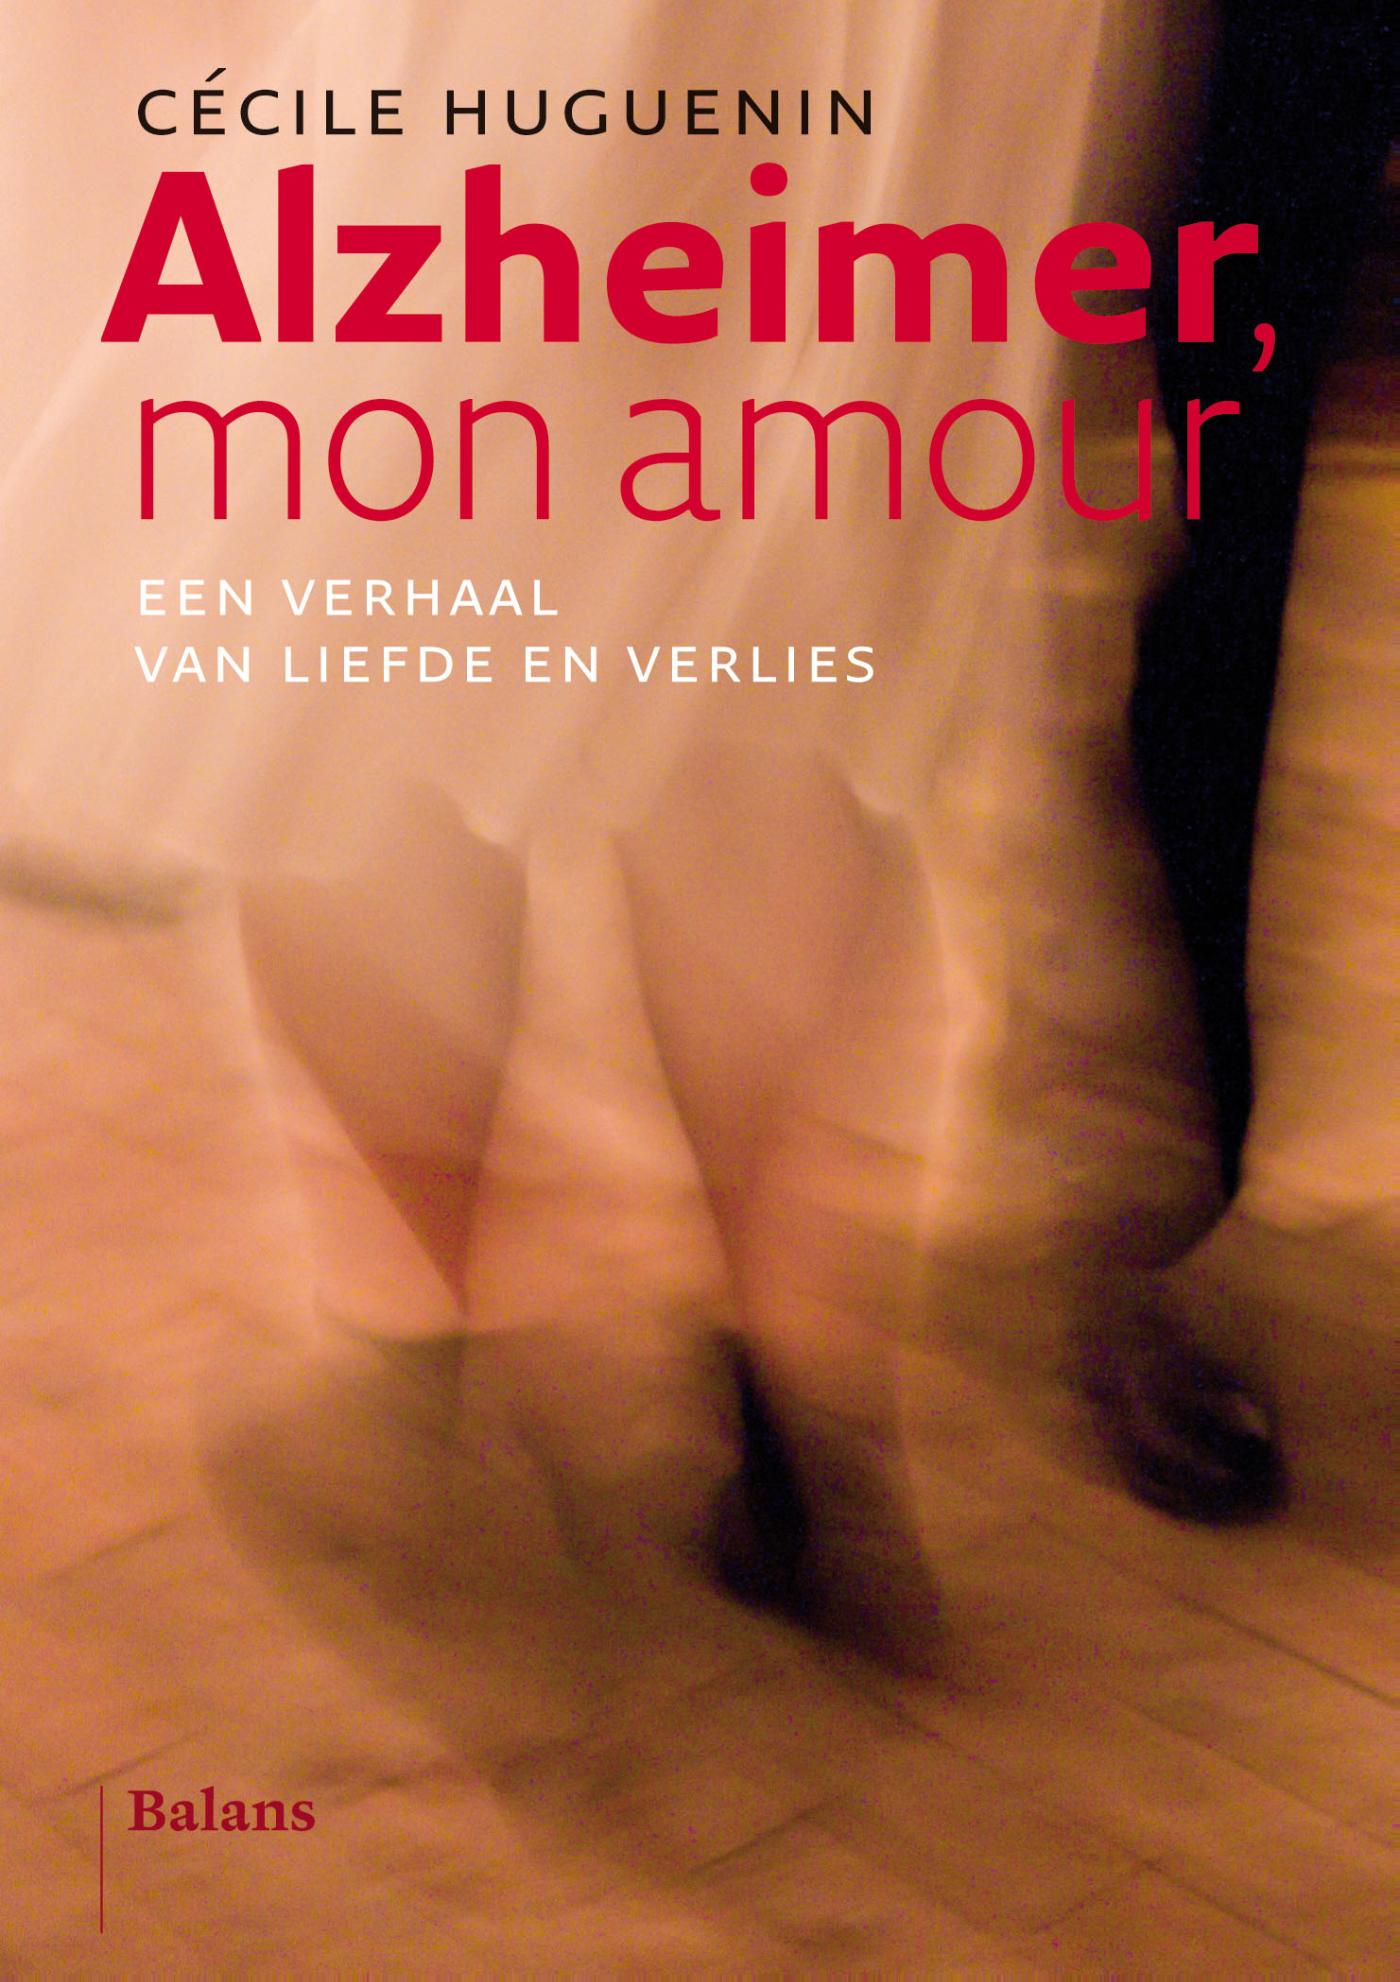 Alzheimer mon amour (Ebook)